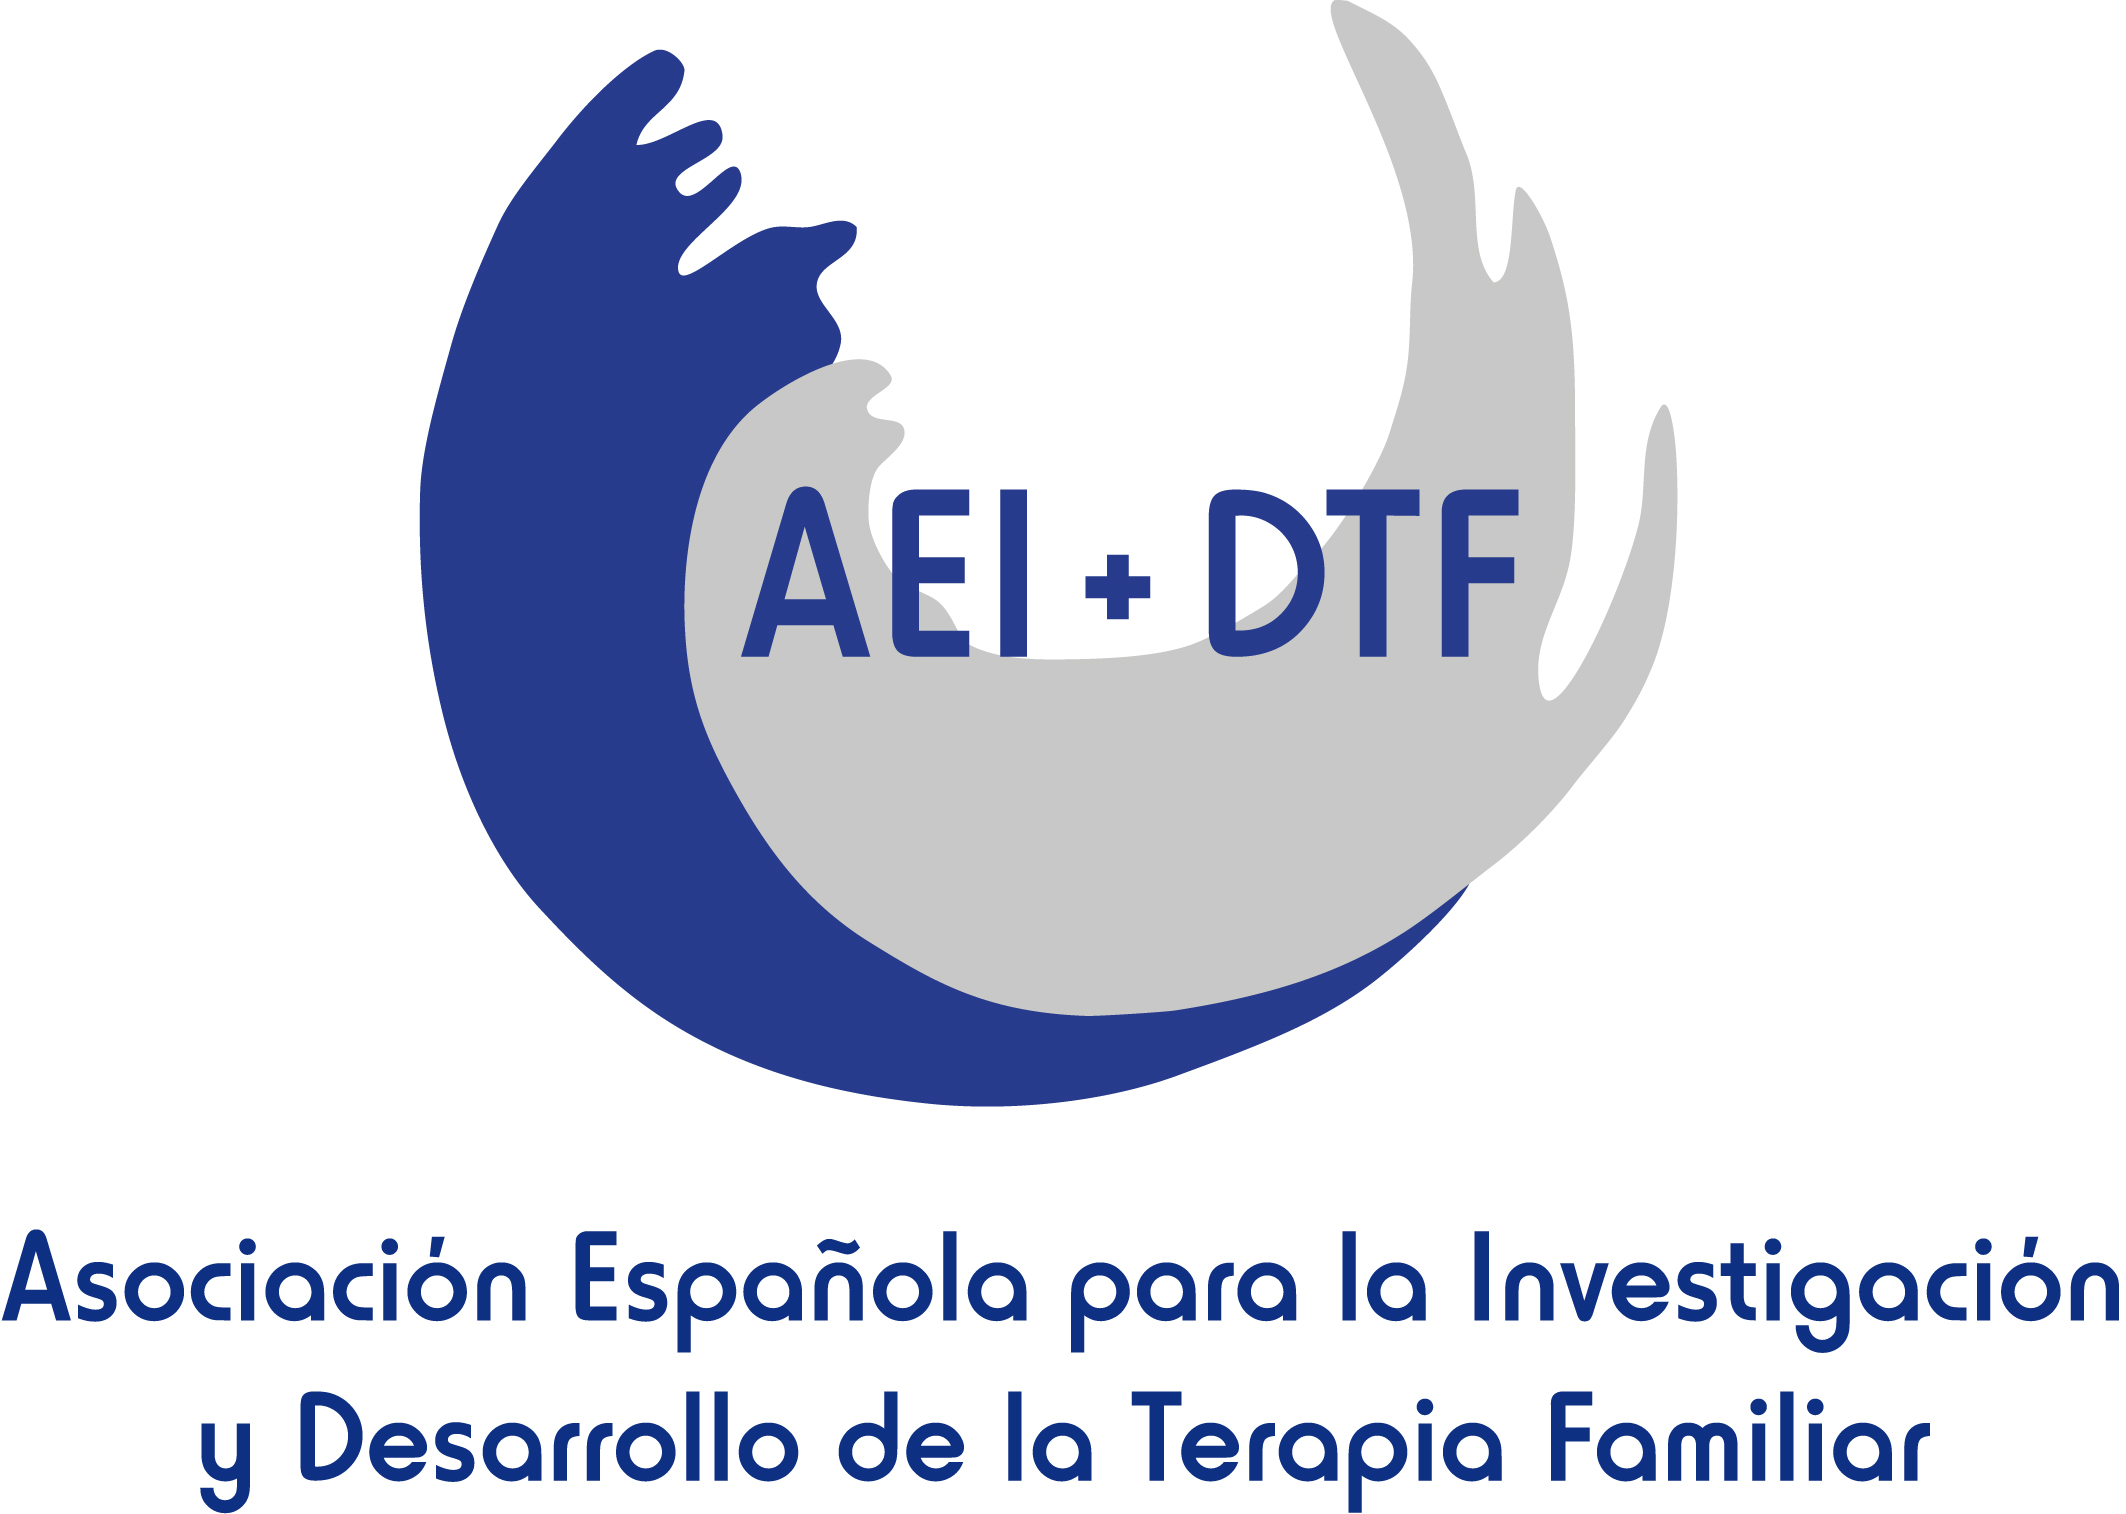 Asociación Española para Investigación y Desarrollo de la Terapia Familiar (AEI+DTF)